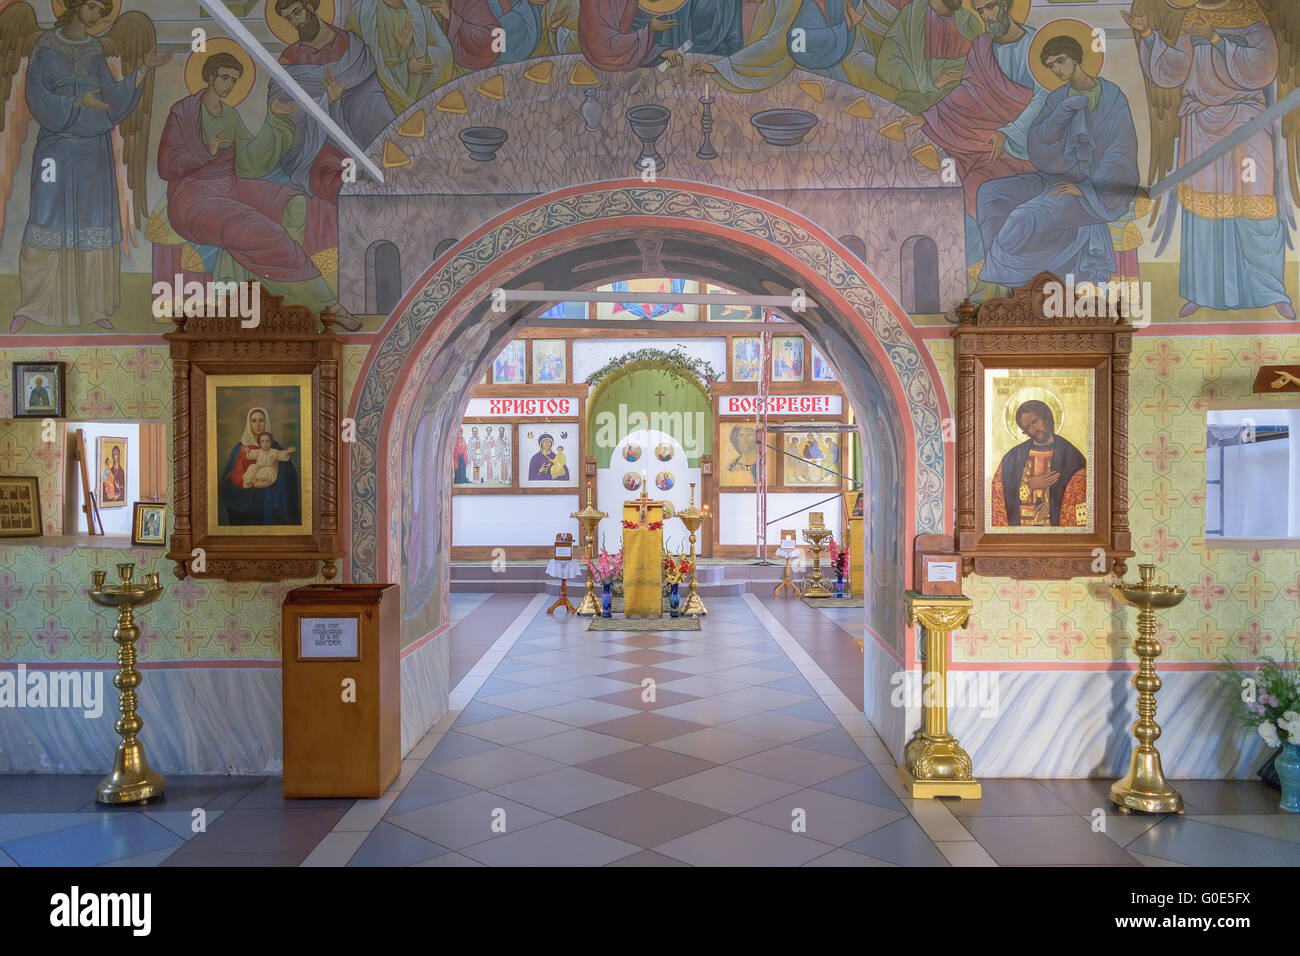 Hallway to iconostasis for worship in church Stock Photo